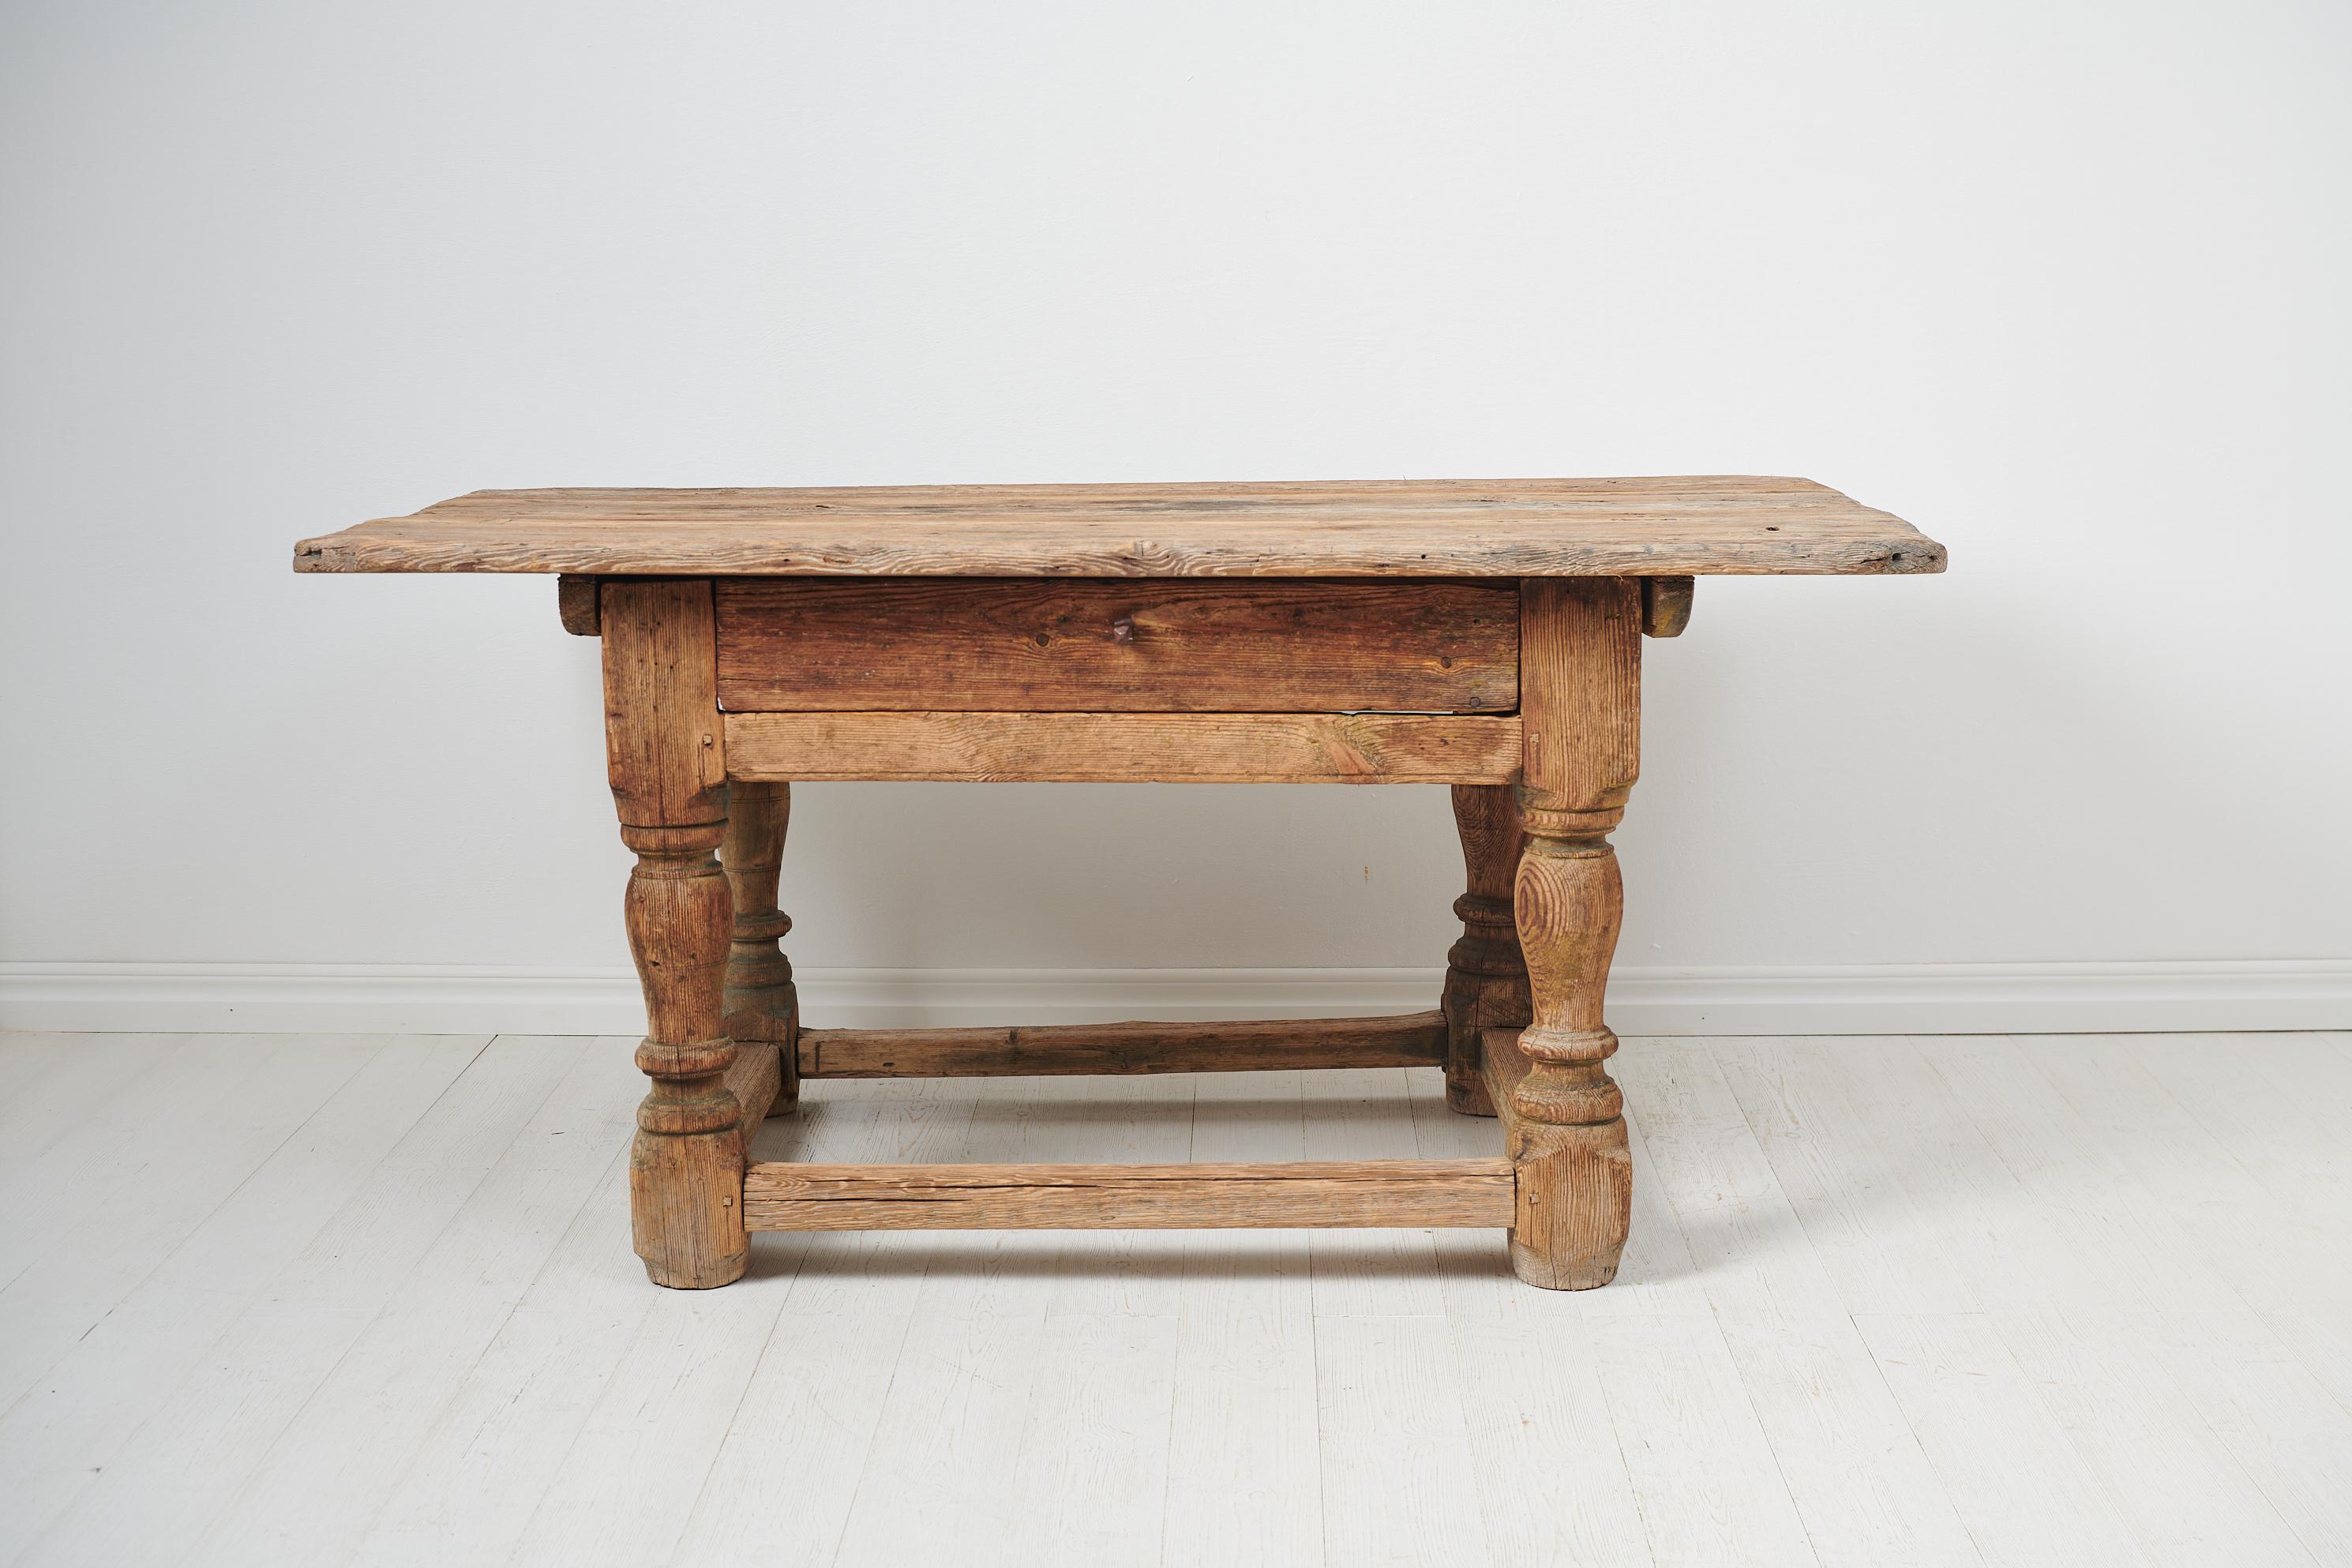 Einzigartiger schwedischer Barocktisch, der Mitte des 17. Jahrhunderts von Hand gefertigt wurde. Der Tisch ist ein sehr seltenes Beispiel für ein frühes schwedisches Möbel und hat einen Rahmen aus Kiefer mit schweren, massiven gedrechselten Beinen.